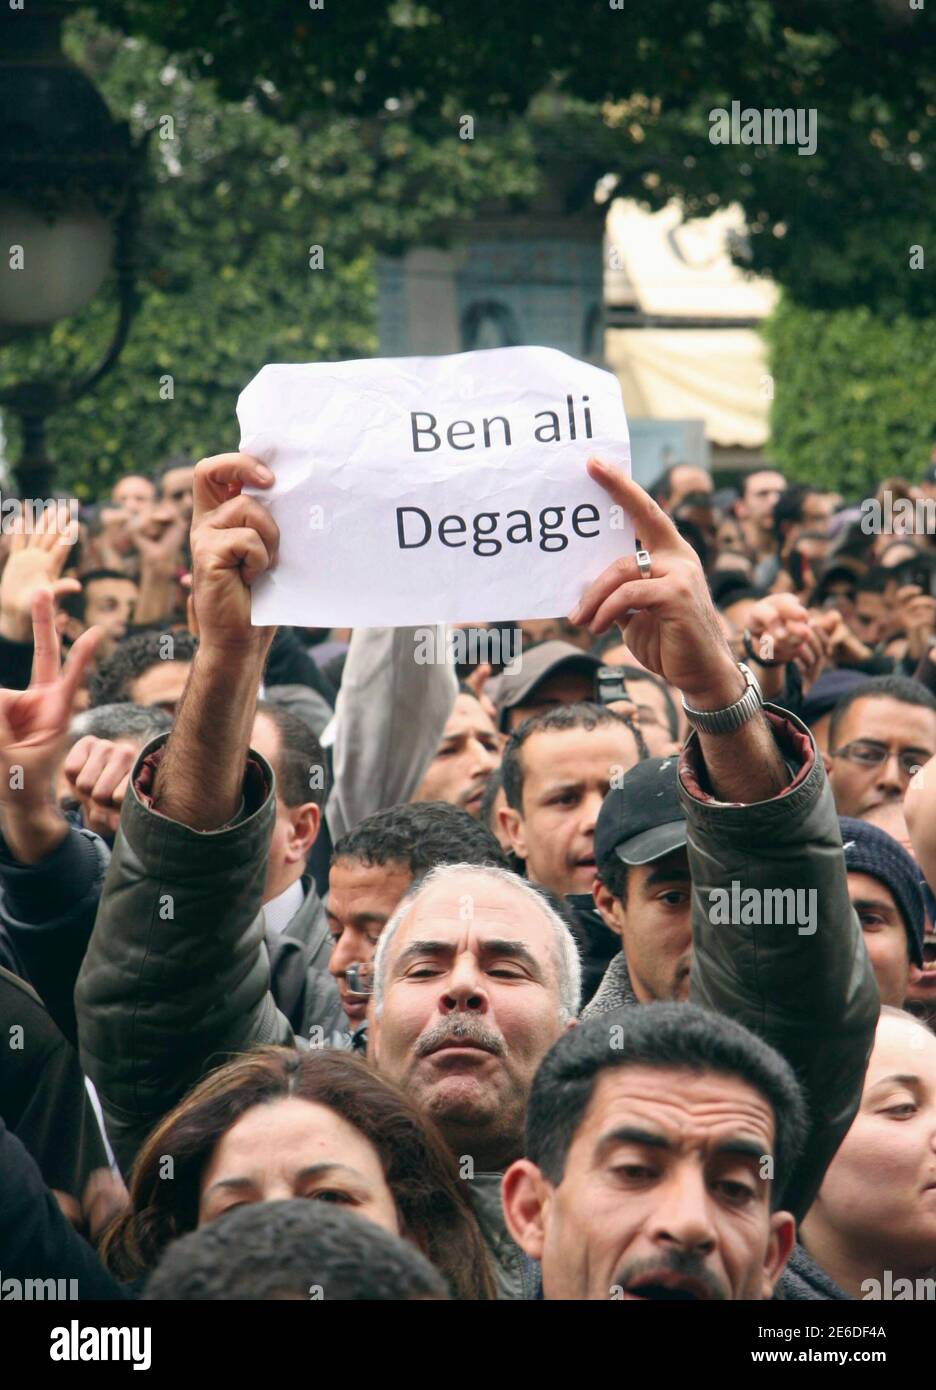 Los tunecinos gritan eslóganes mientras se manifiestan contra el presidente tunecino Zine al-Abidine Ben Ali en Túnez el 14 de enero, 2011 .los manifestantes exigieron la inmediata dimisión del presidente tunecino Zine al-Abidine Ben Ali el viernes, a pesar de la promesa del veterano gobernante de abandonar en 2014 en un intento por poner fin a los peores disturbios de su gobierno.al menos 5,000 personas se manifestaron fuera del ministerio del interior cantando "Ben Ali, ¡se van!" Y 'Ben Ali, gracias, pero eso es suficiente!", dijo un reportero de Reuters. El periódico dice 'Ben Ali, salir'. REUTERS/Zoubeir Souissi (TÚNEZ - Tags: POLÍTICA MILITAR DISTURBIOS CIVILES) Foto de stock